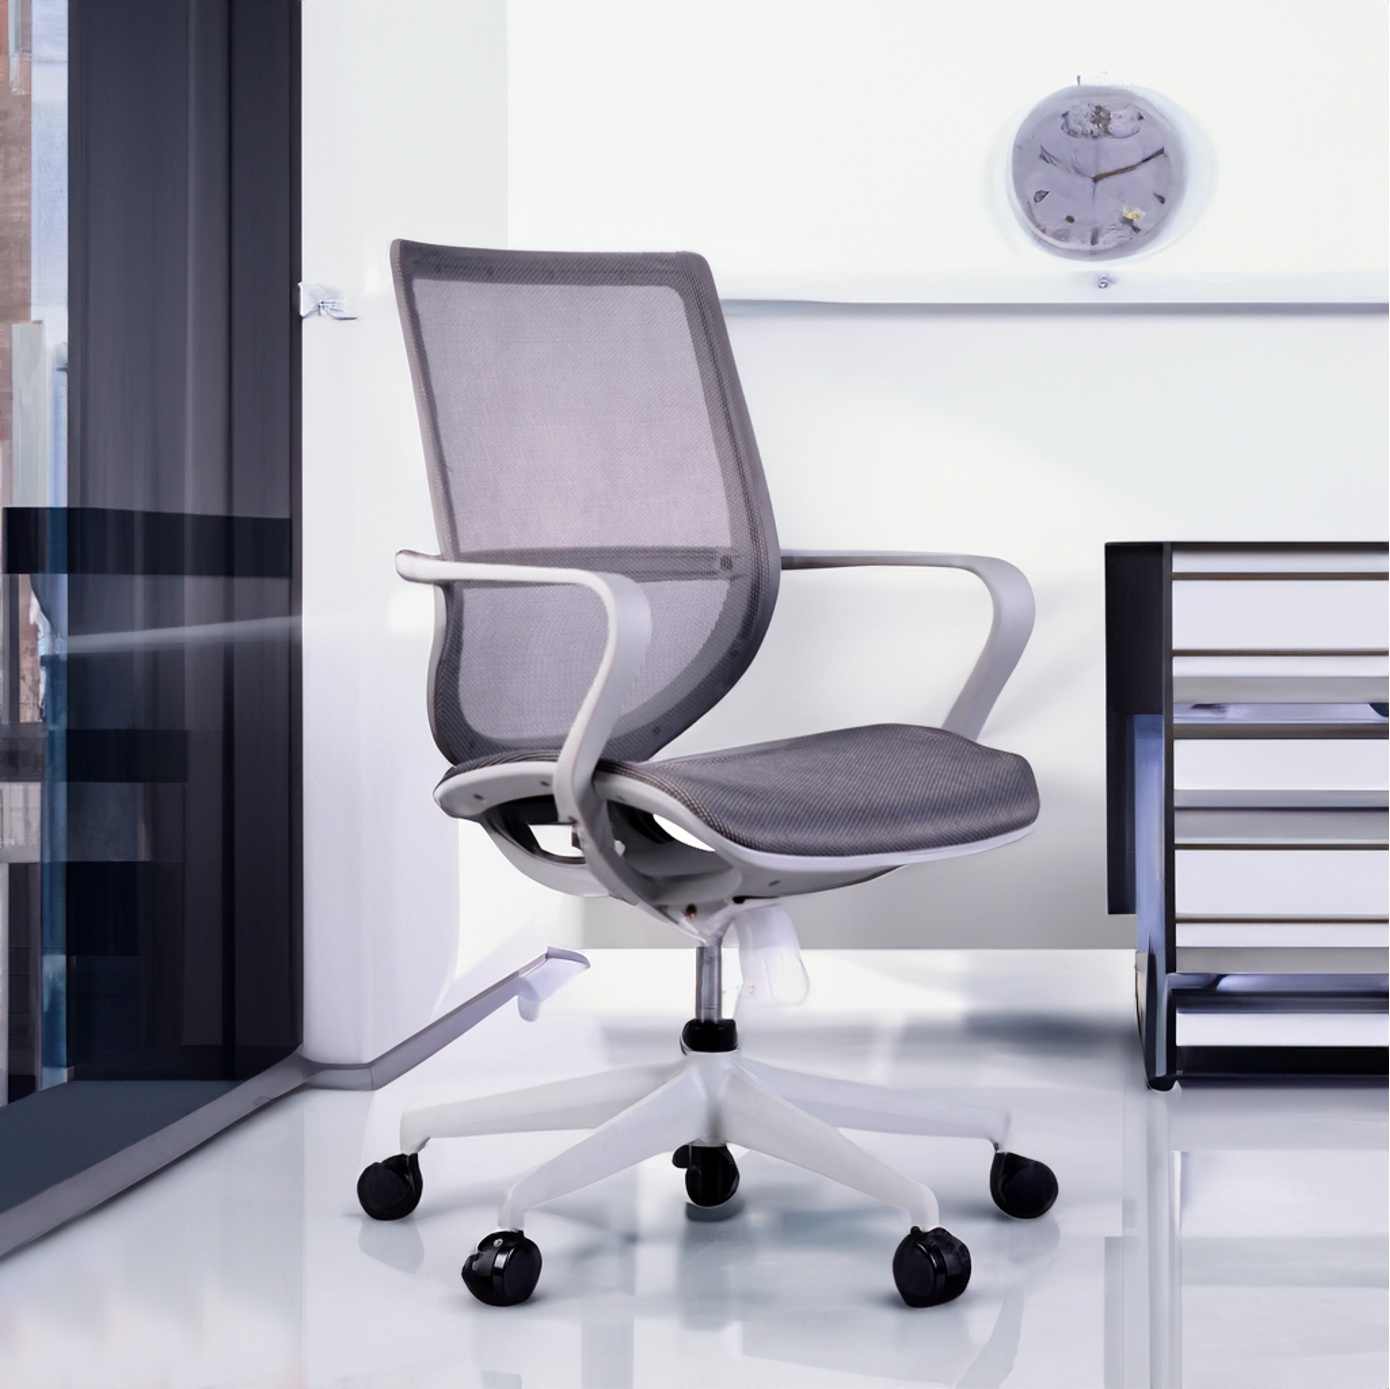 D Series – Denver Office Chair